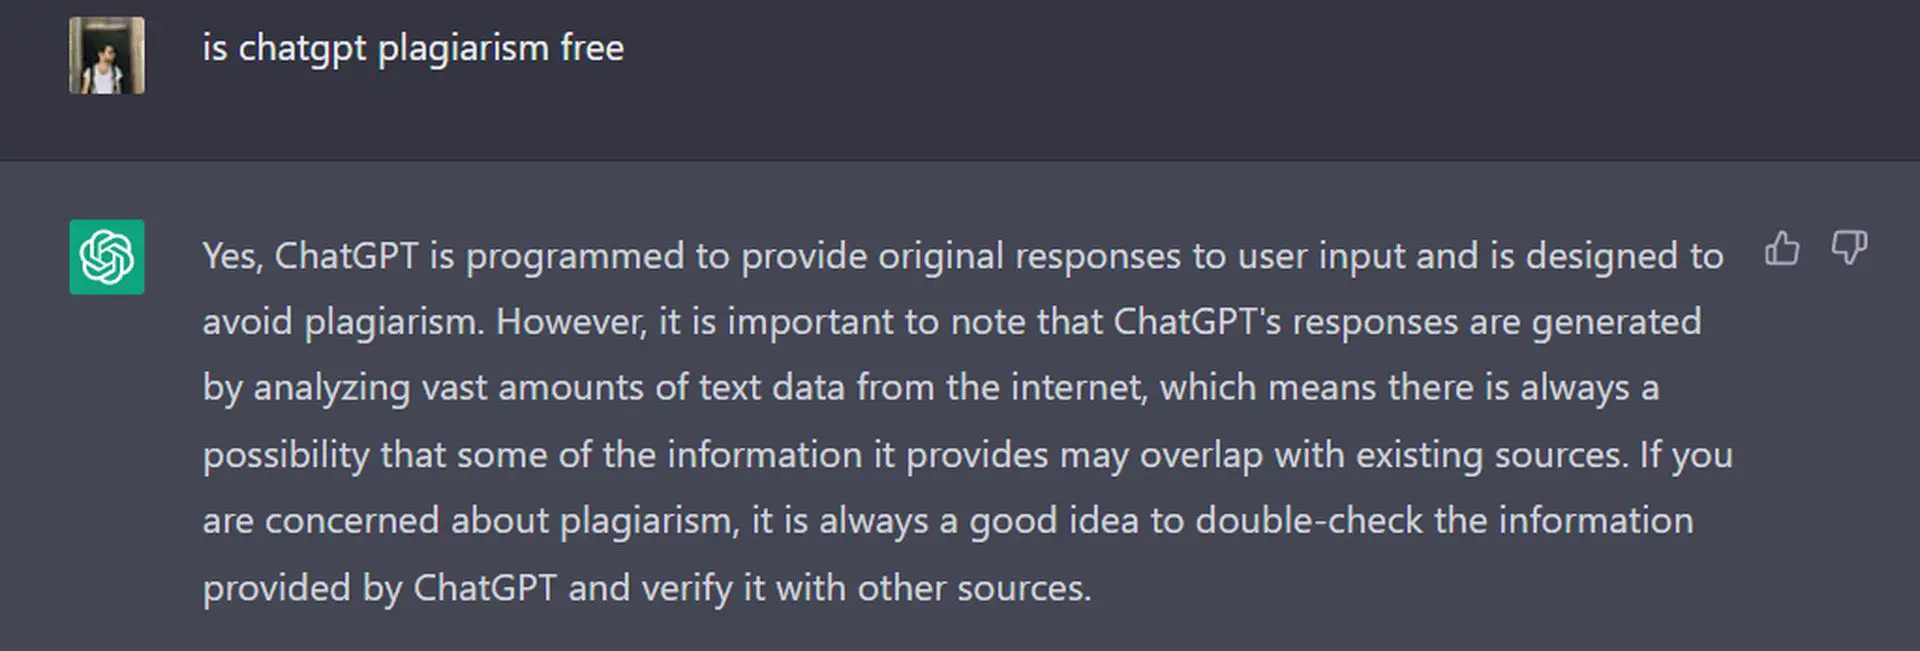 Is ChatGPT-plagiaat gratis? ChatGPT bevat geen geplagieerde inhoud, maar het is niet volledig ethisch. Er zijn ook plagiaatcontroles om het te detecteren.